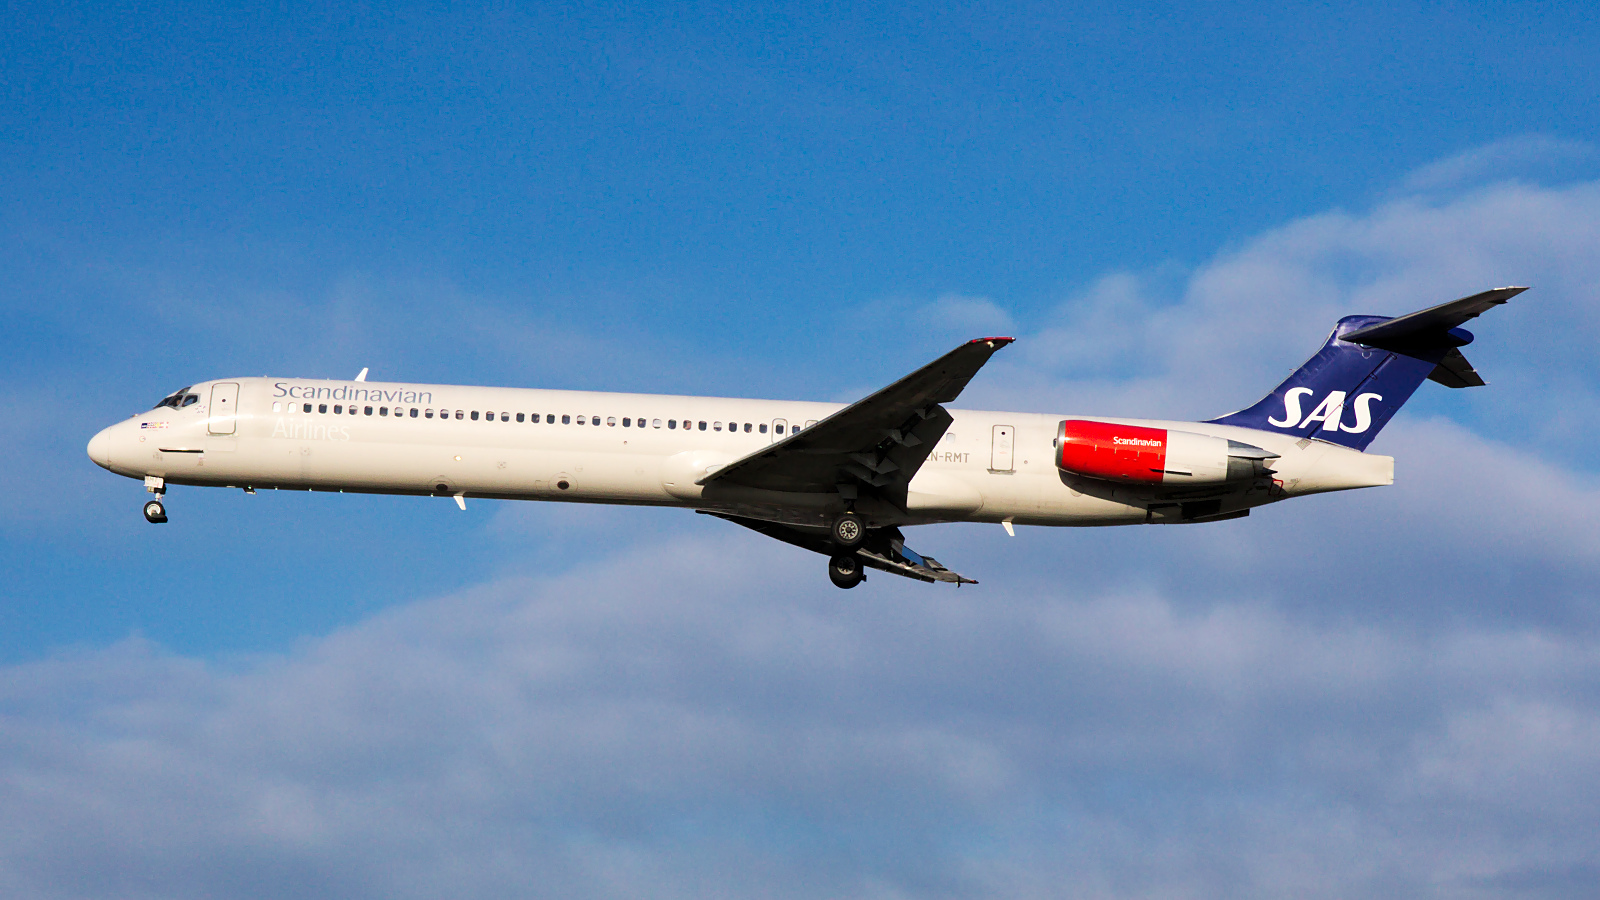 LN-RMT ✈ Scandinavian Airlines McDonnell Douglas MD-82 @ London-Heathrow